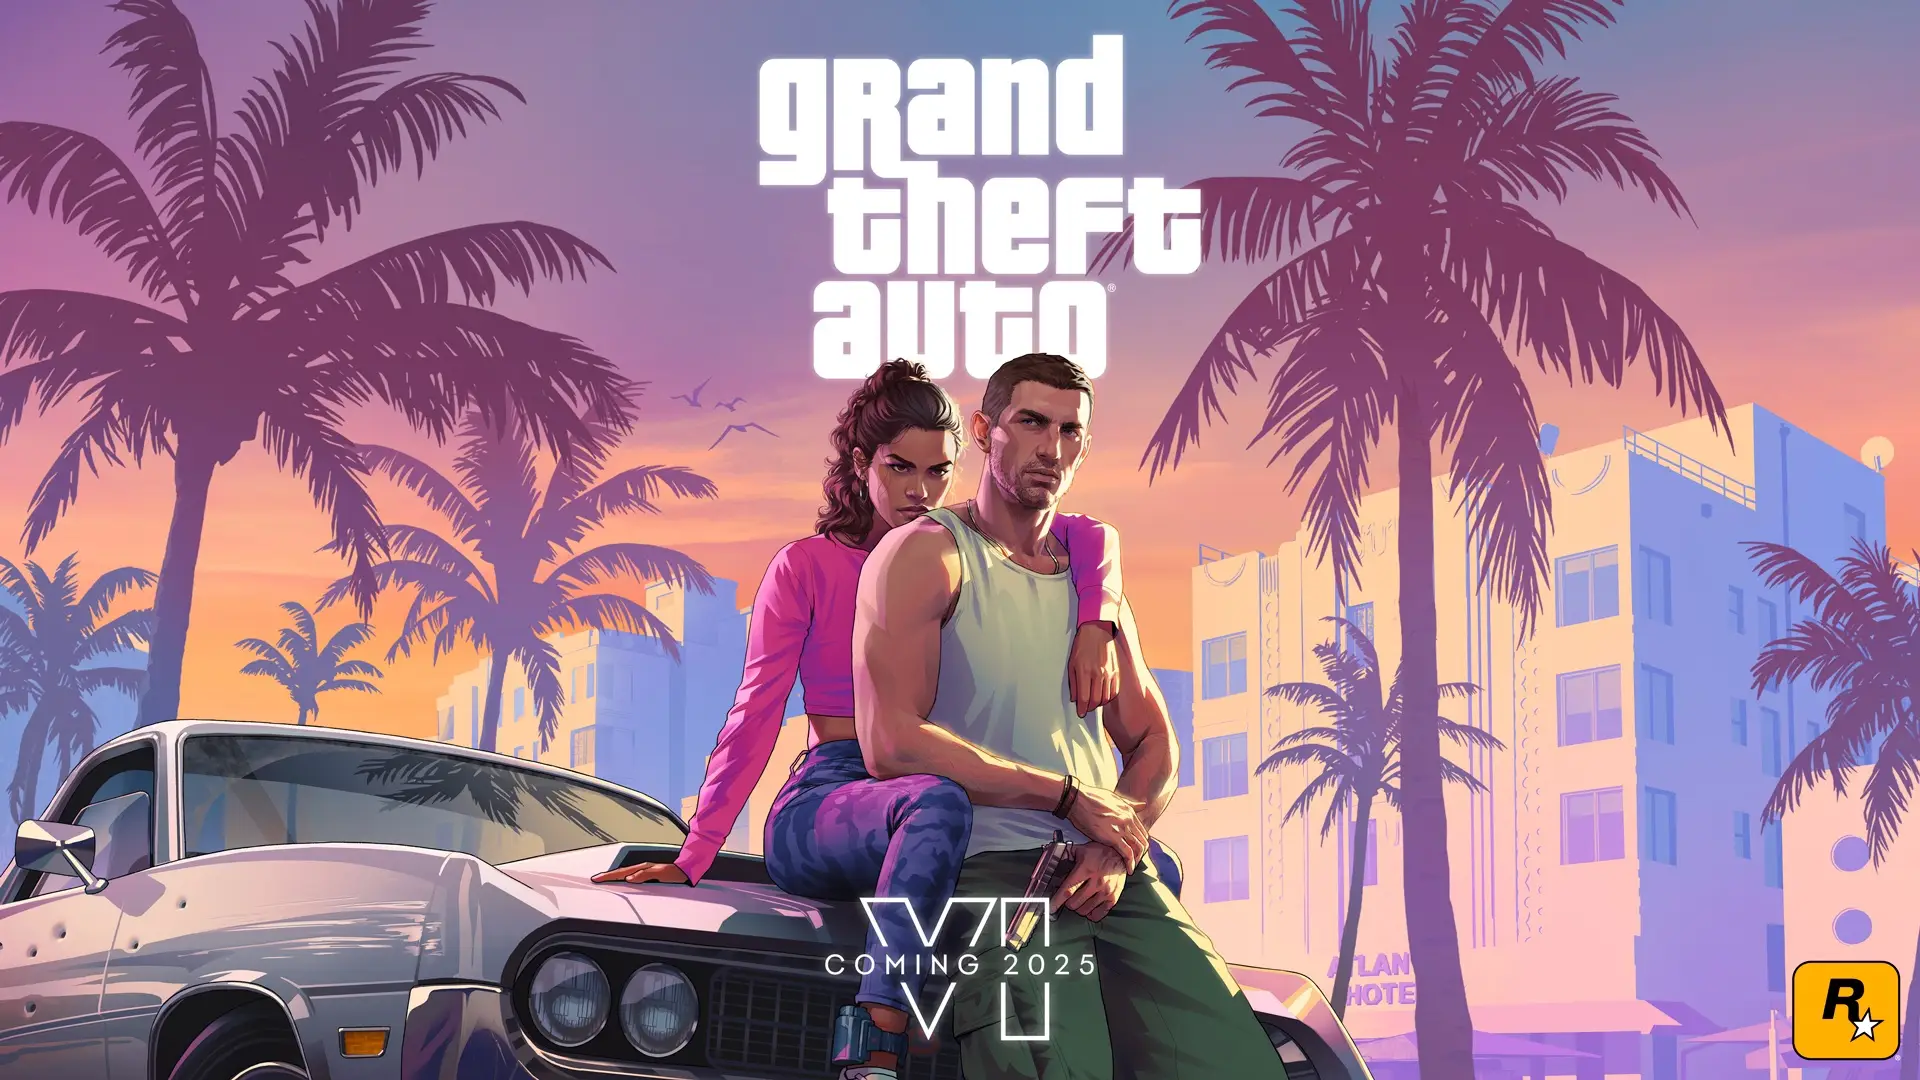 Rockstar представила трейлер Grand Theft Auto VI с датой выхода в 2025 году